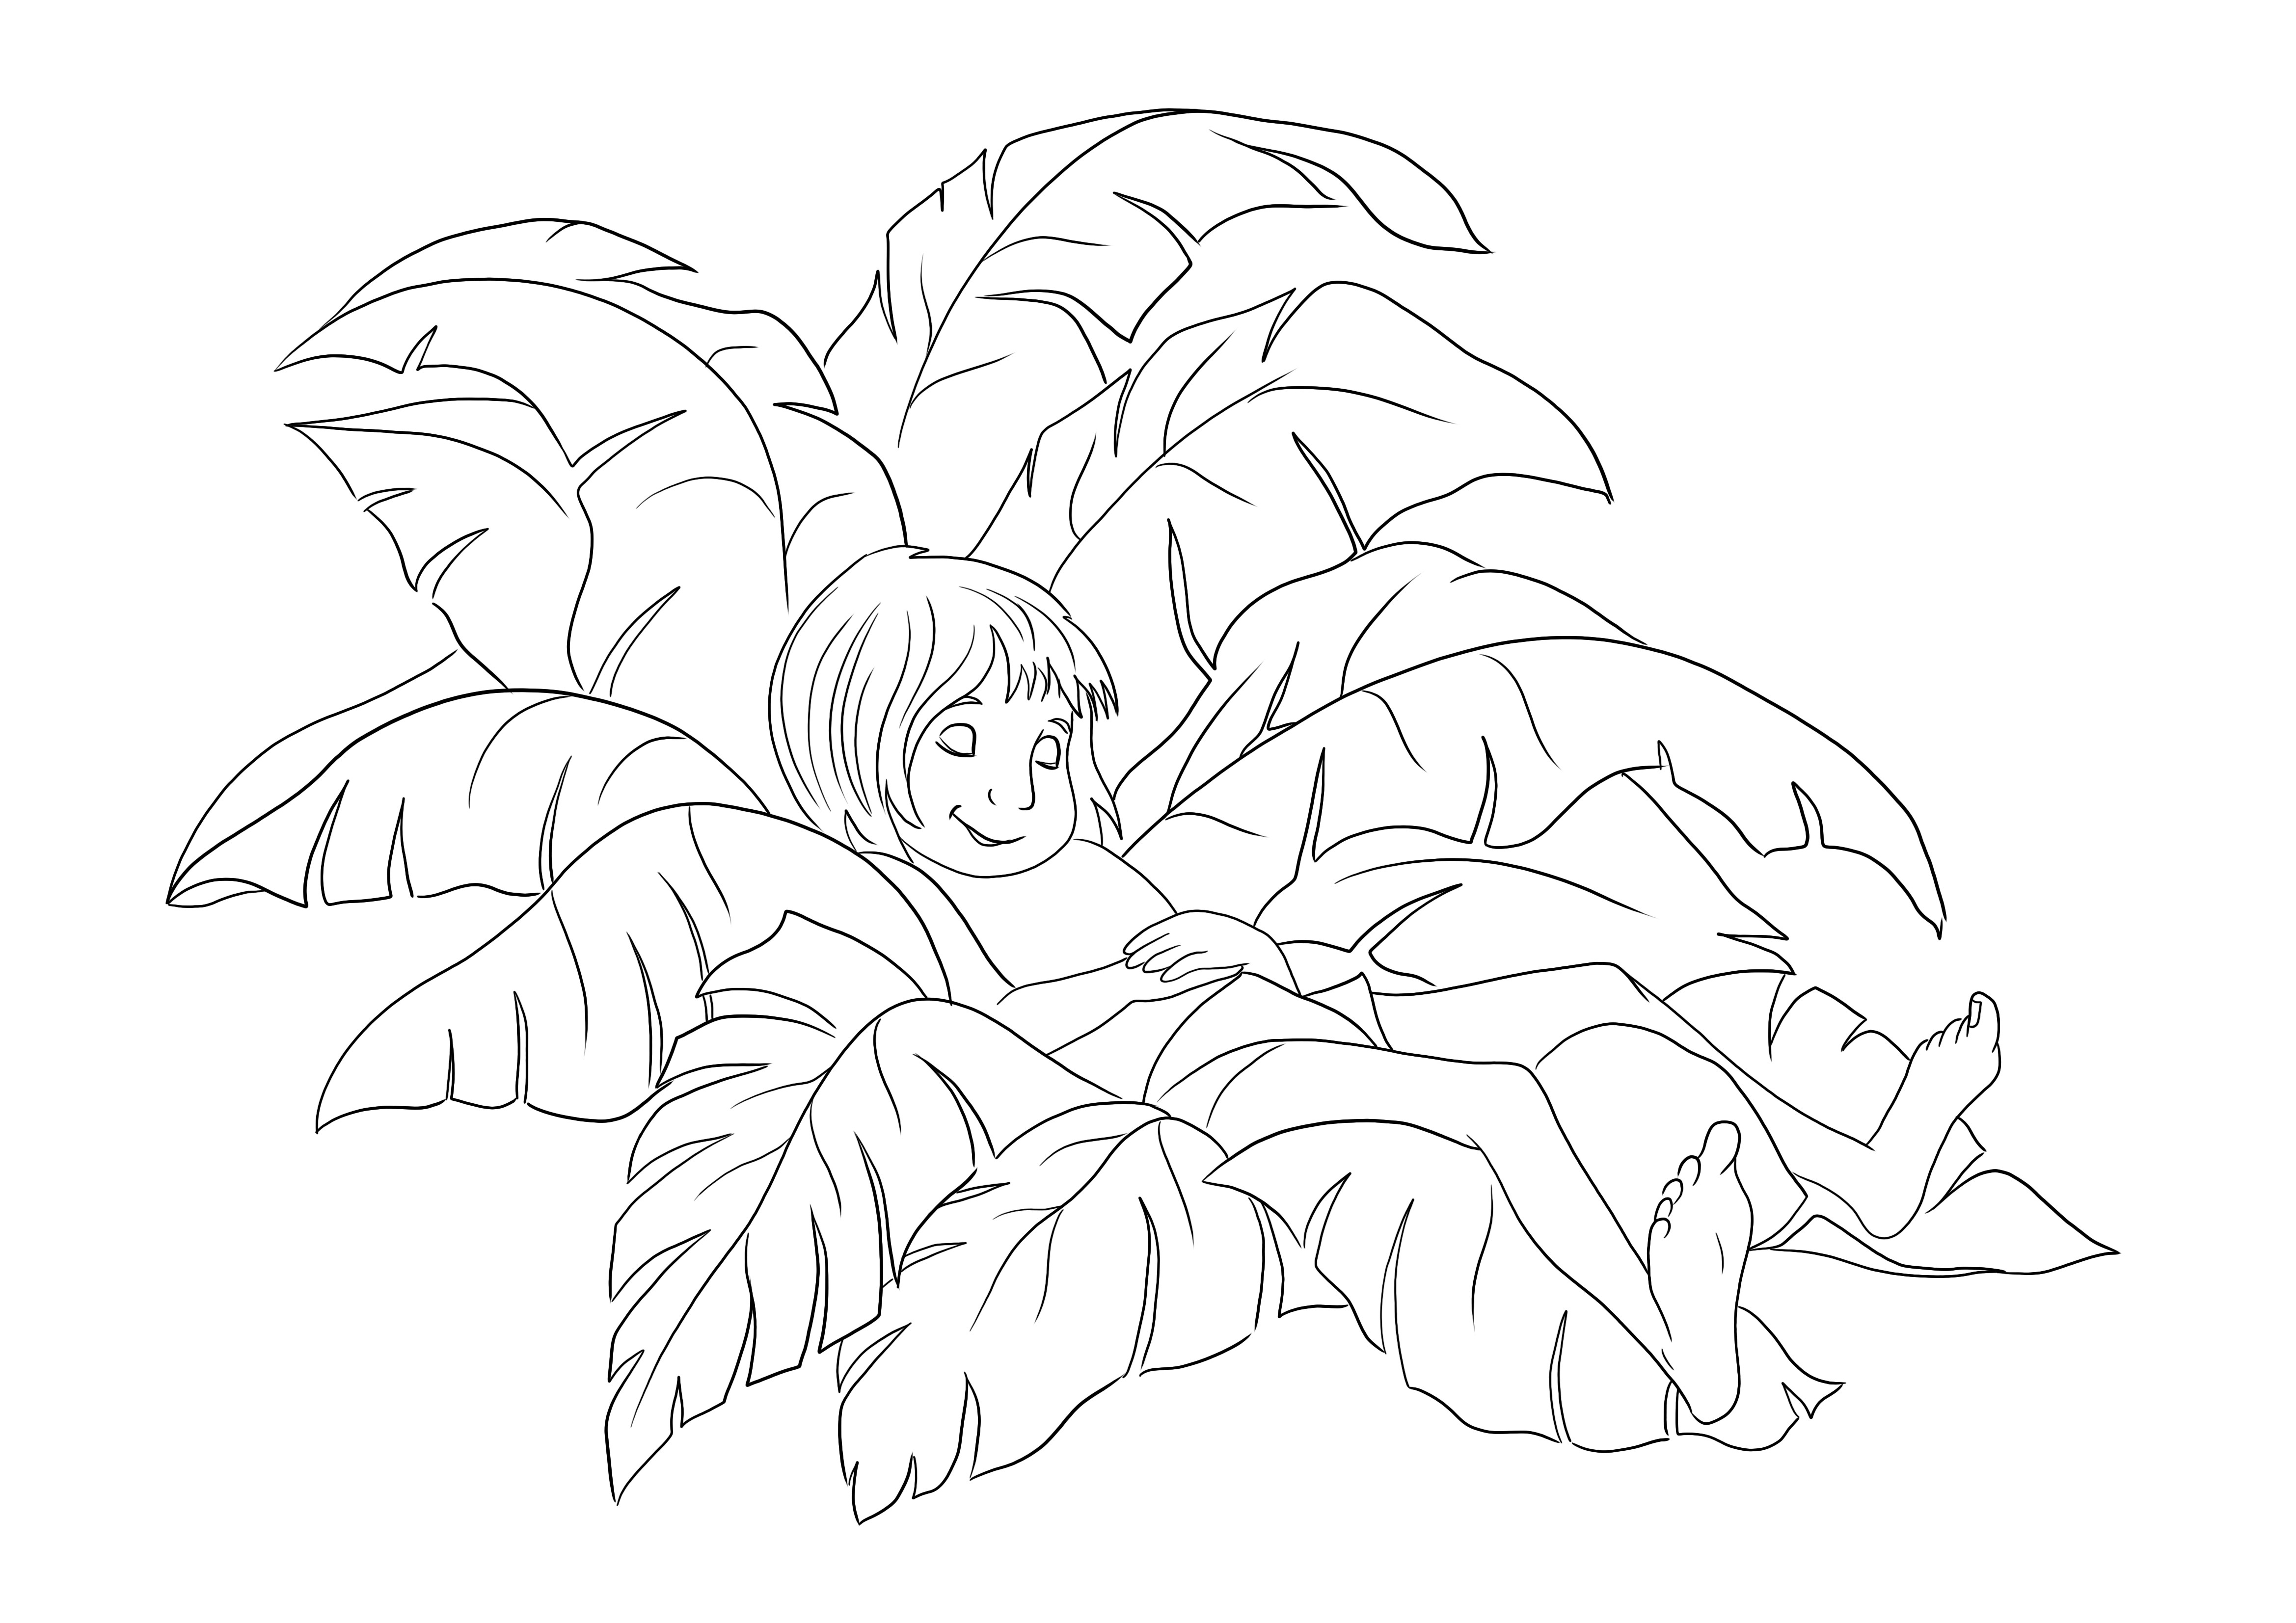 O colorare și imprimare ușoară a lui Mowgli dormind pe frunze de palmier pentru utilizare gratuită